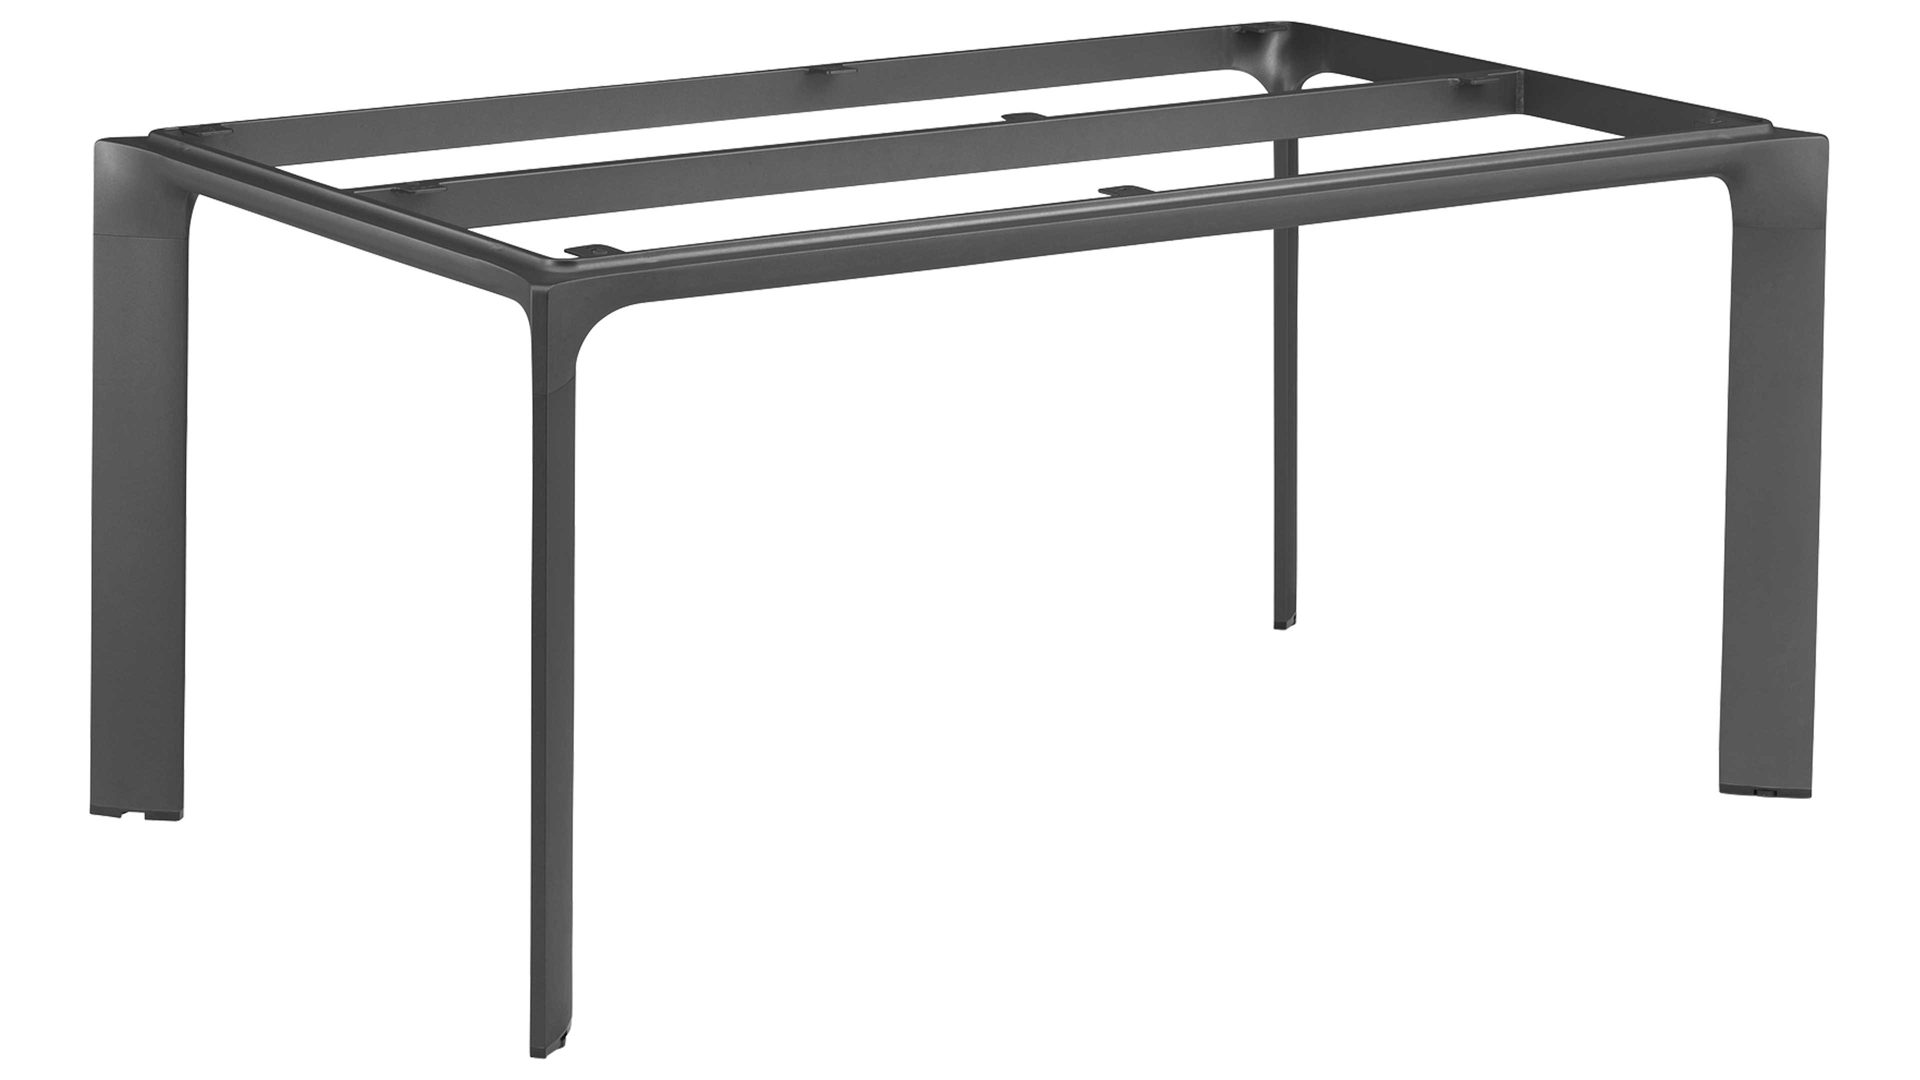 Tischgestell Kettler aus Metall in Anthrazit KETTLER Tischgestell Diamond anthrazitfarbenes Aluminium - ca. 160 x 95 cm